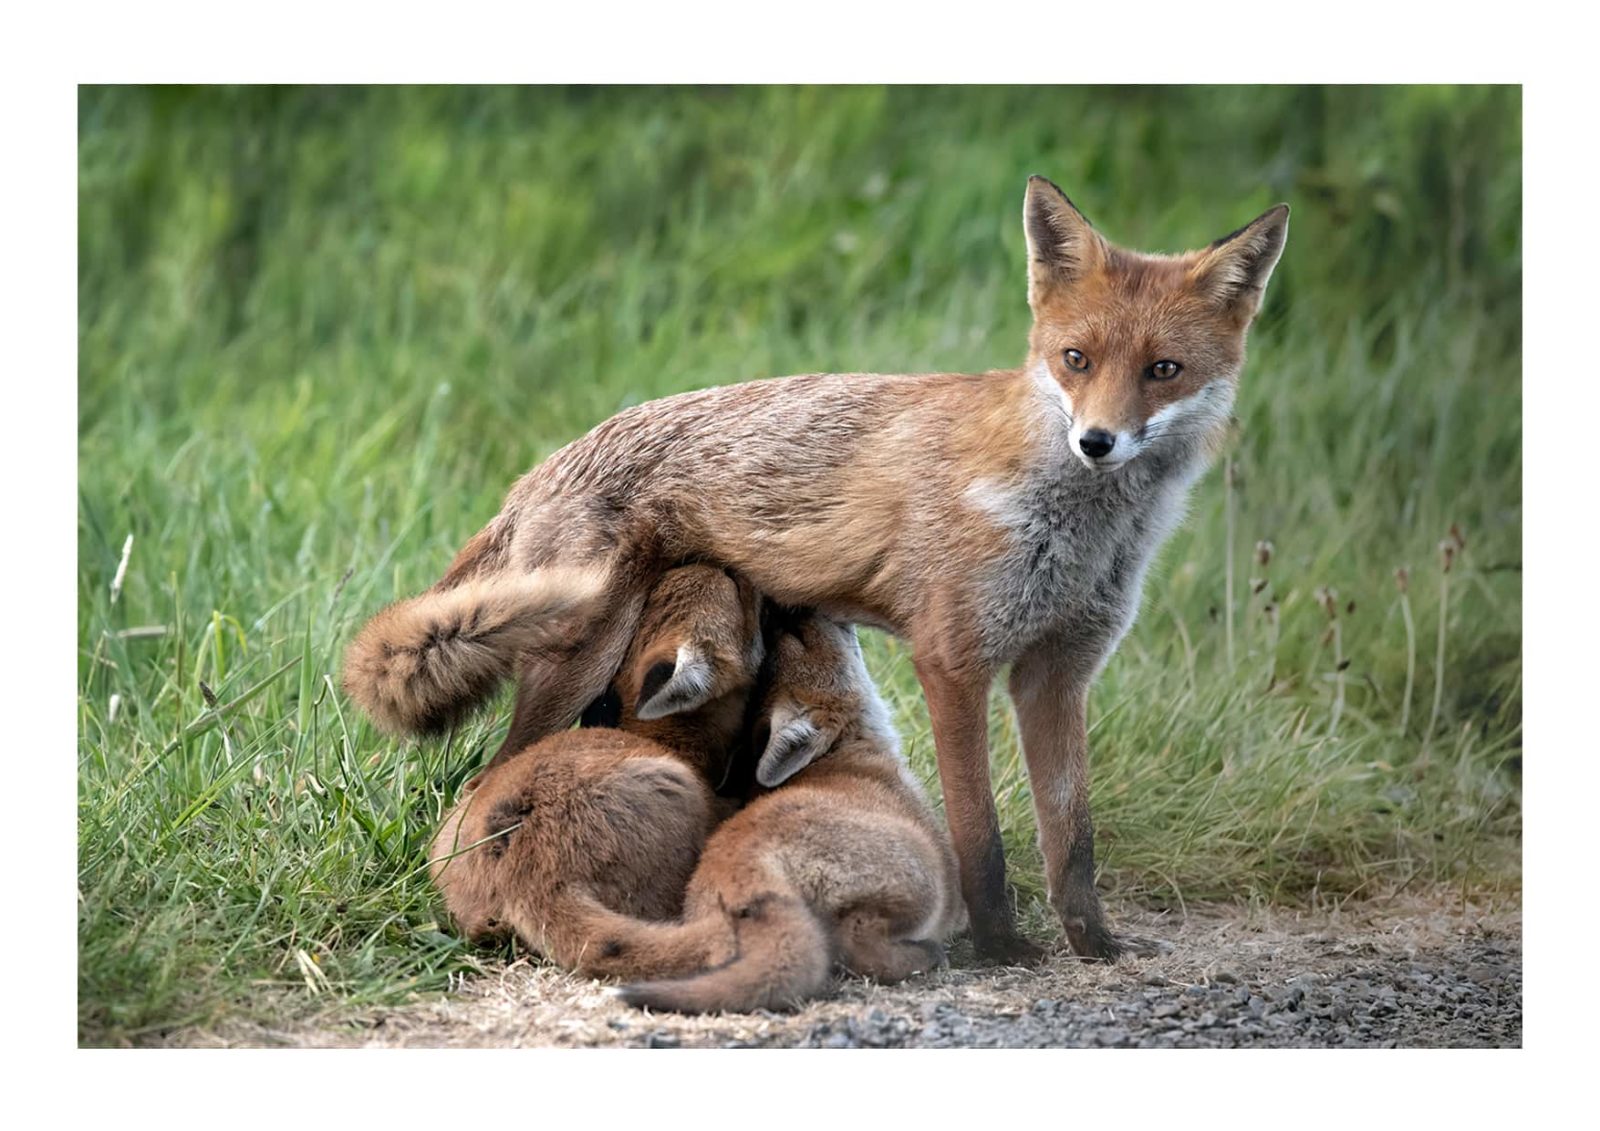 Fox Cubs feeding